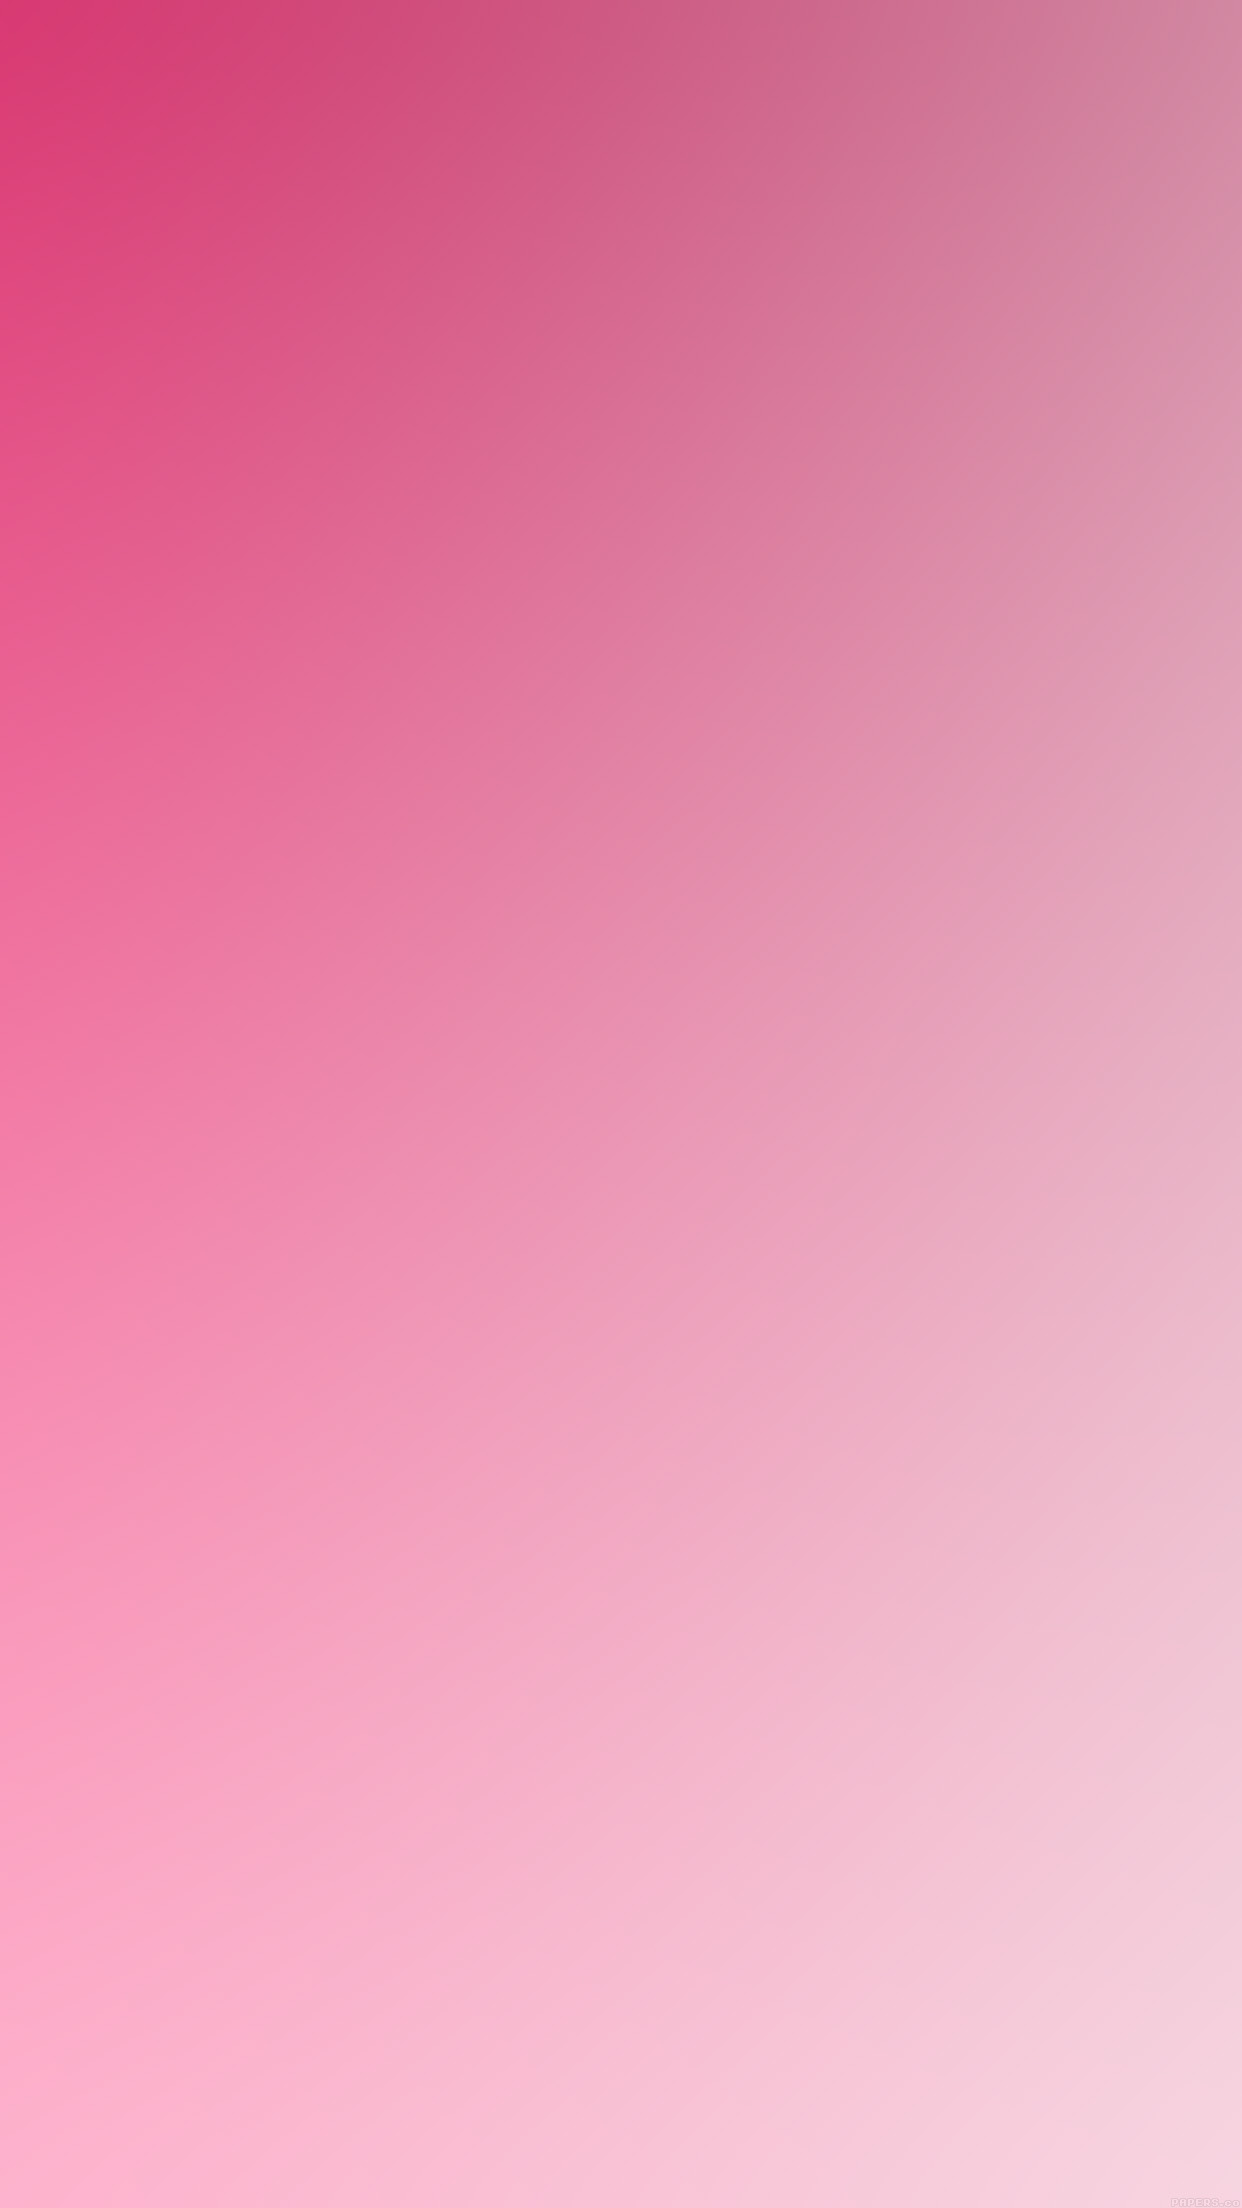 Iphone ホーム画面 壁紙 ピンク